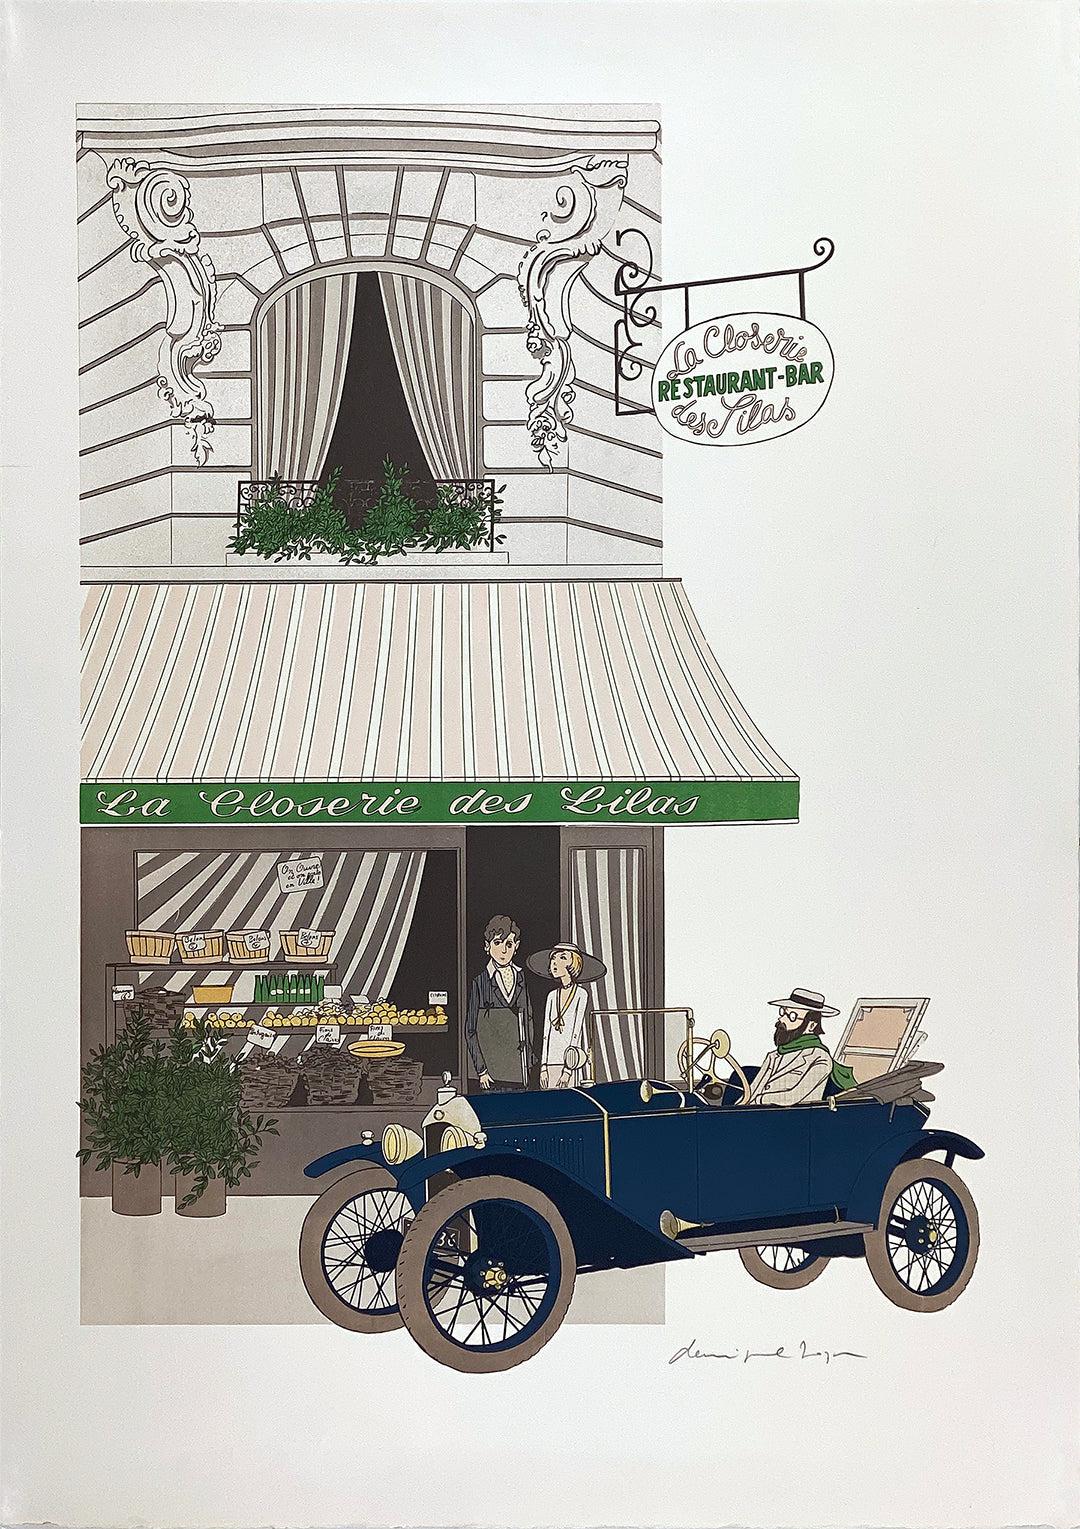 Original Vintage La Closerie des Lilas French Restaurant Signed Print by Denis Paul Noyer c1979